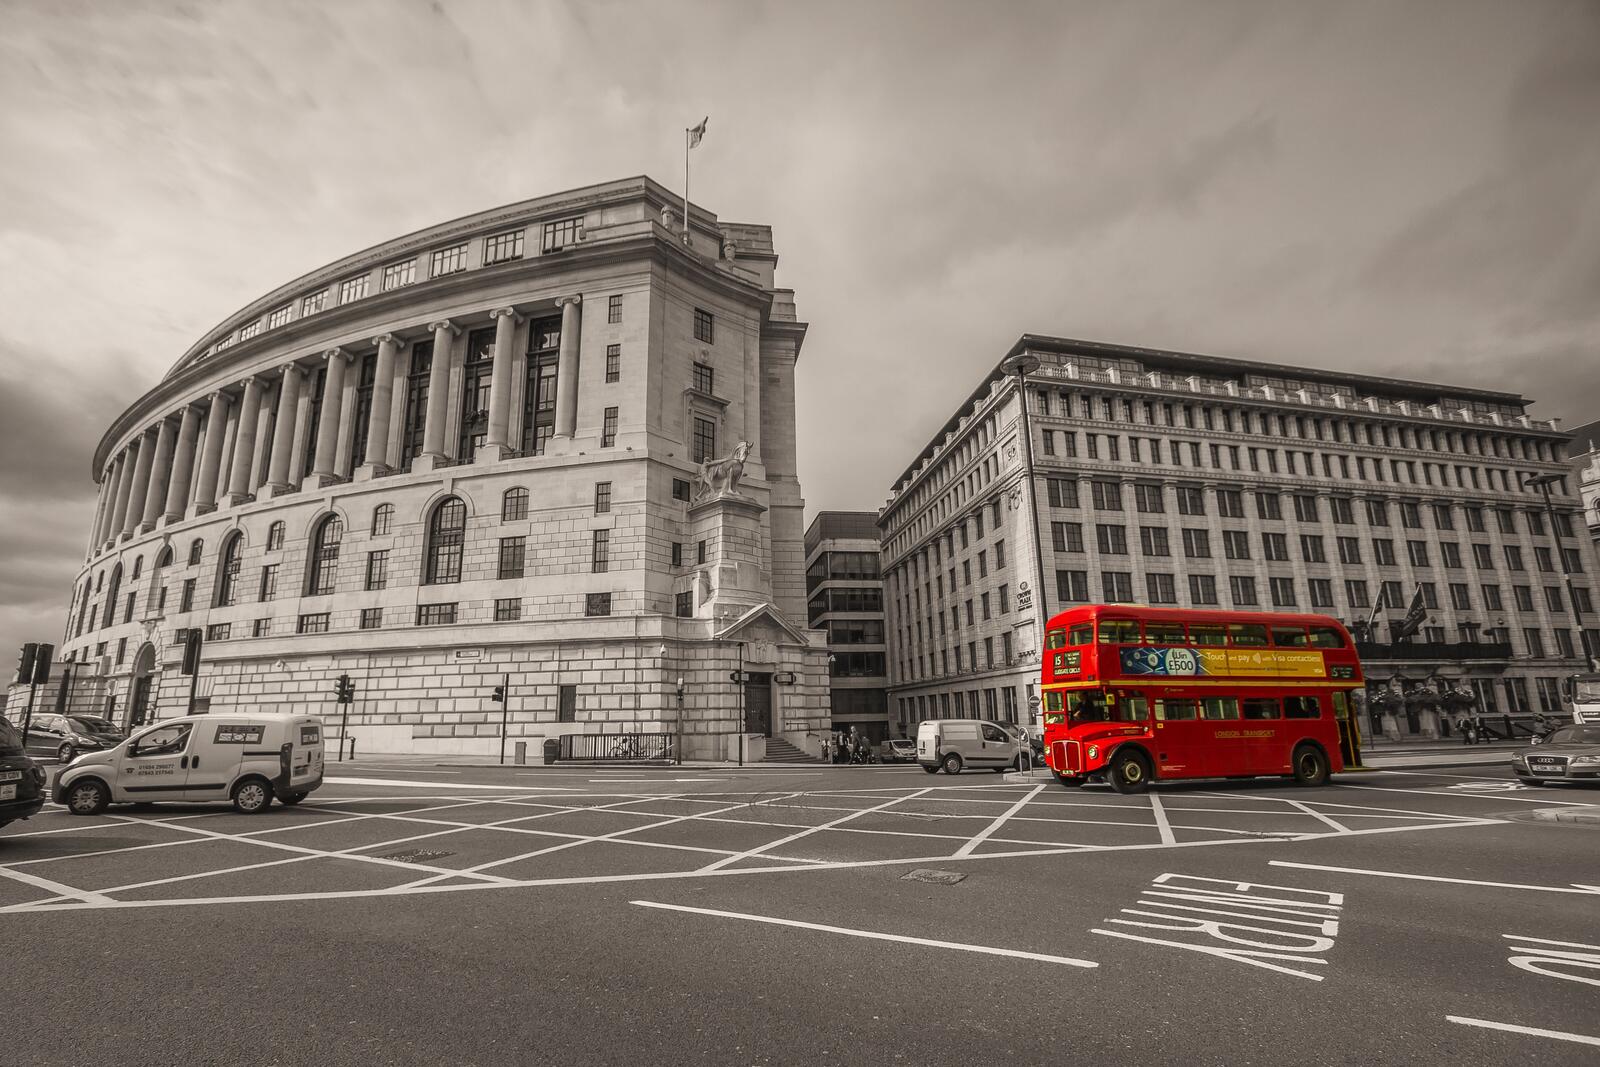 Бесплатное фото Черно-белая архитектура Лондона с автомобилями